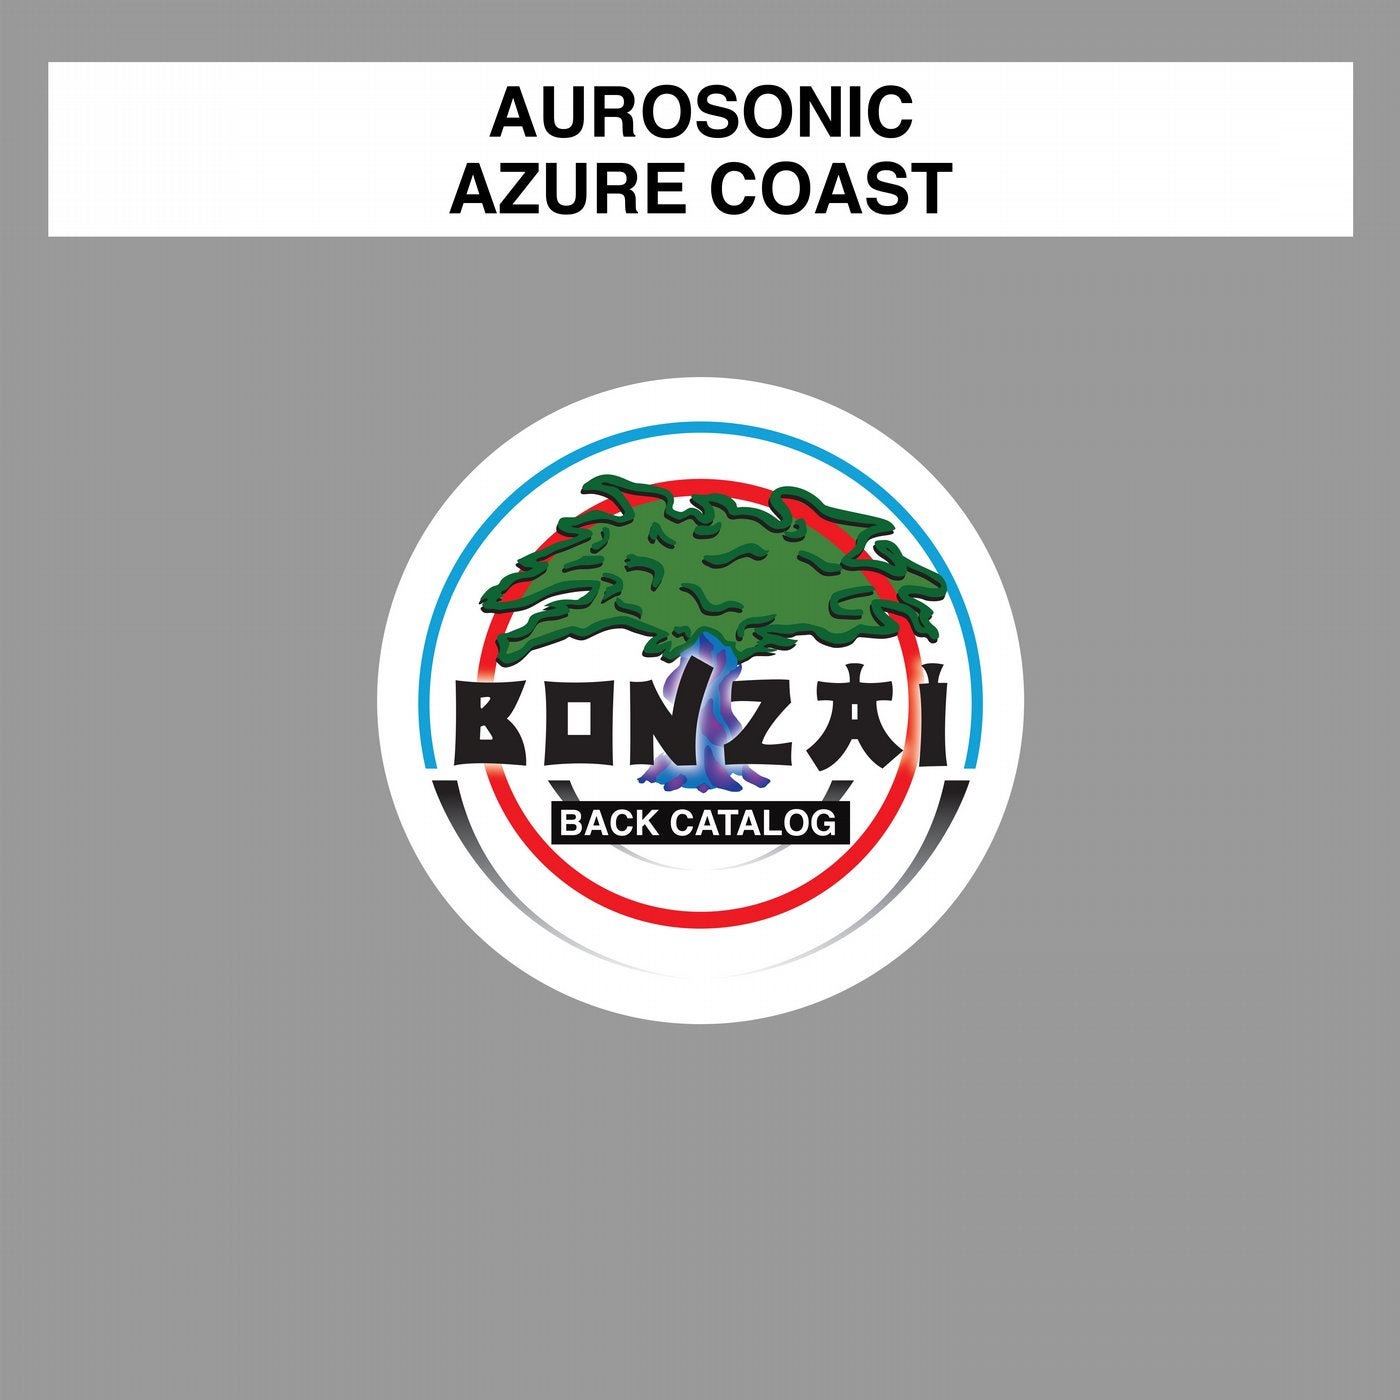 Azure Coast